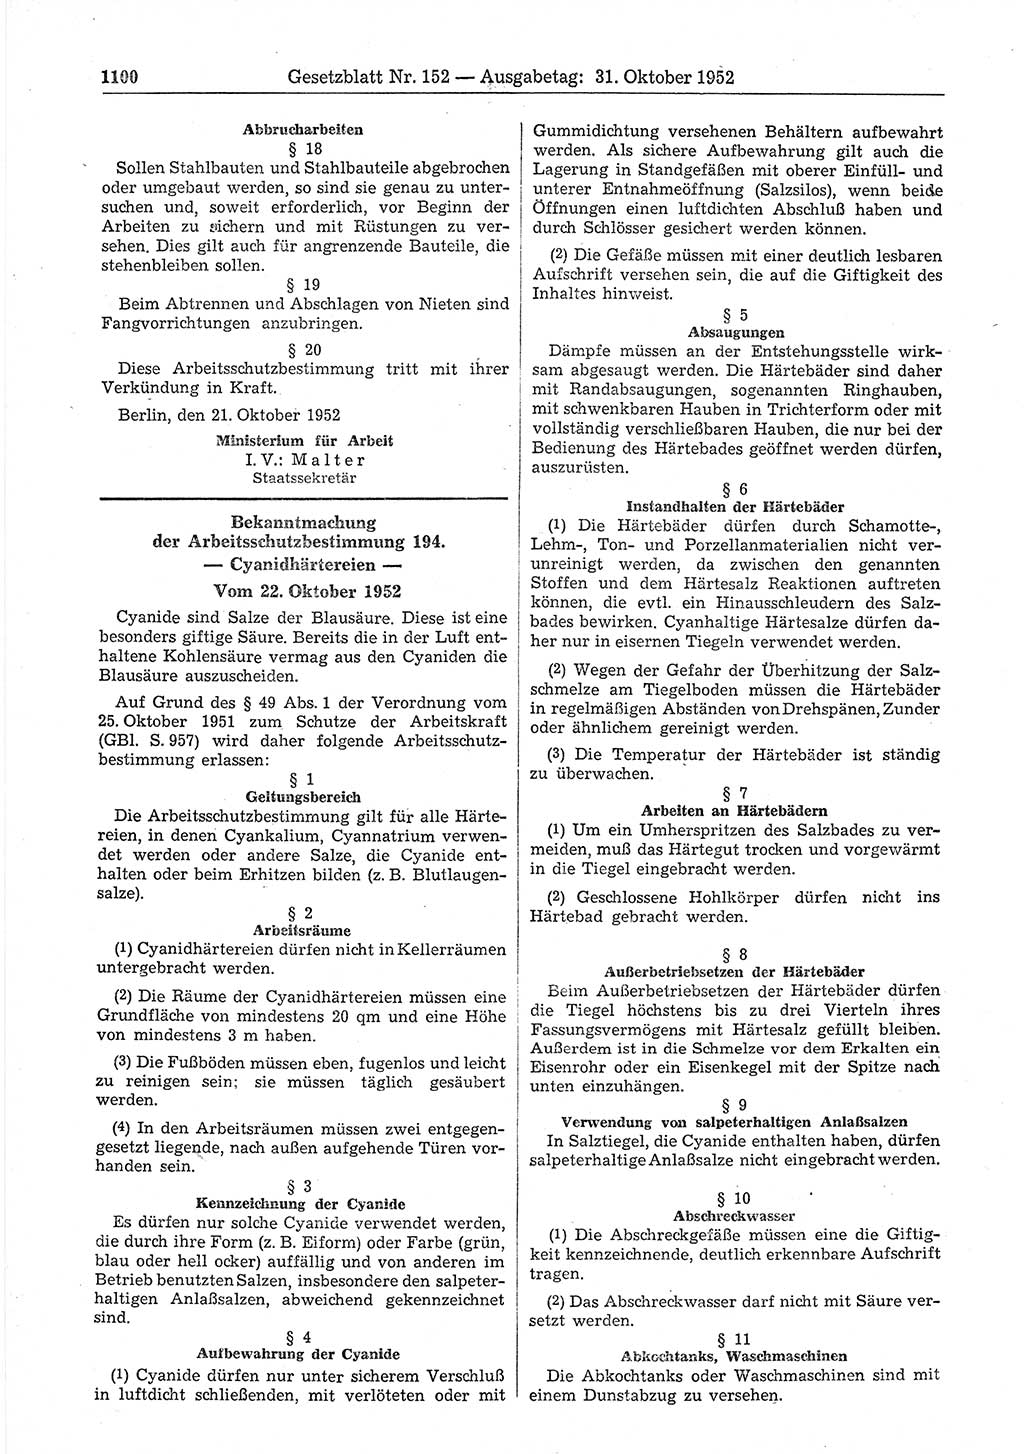 Gesetzblatt (GBl.) der Deutschen Demokratischen Republik (DDR) 1952, Seite 1100 (GBl. DDR 1952, S. 1100)